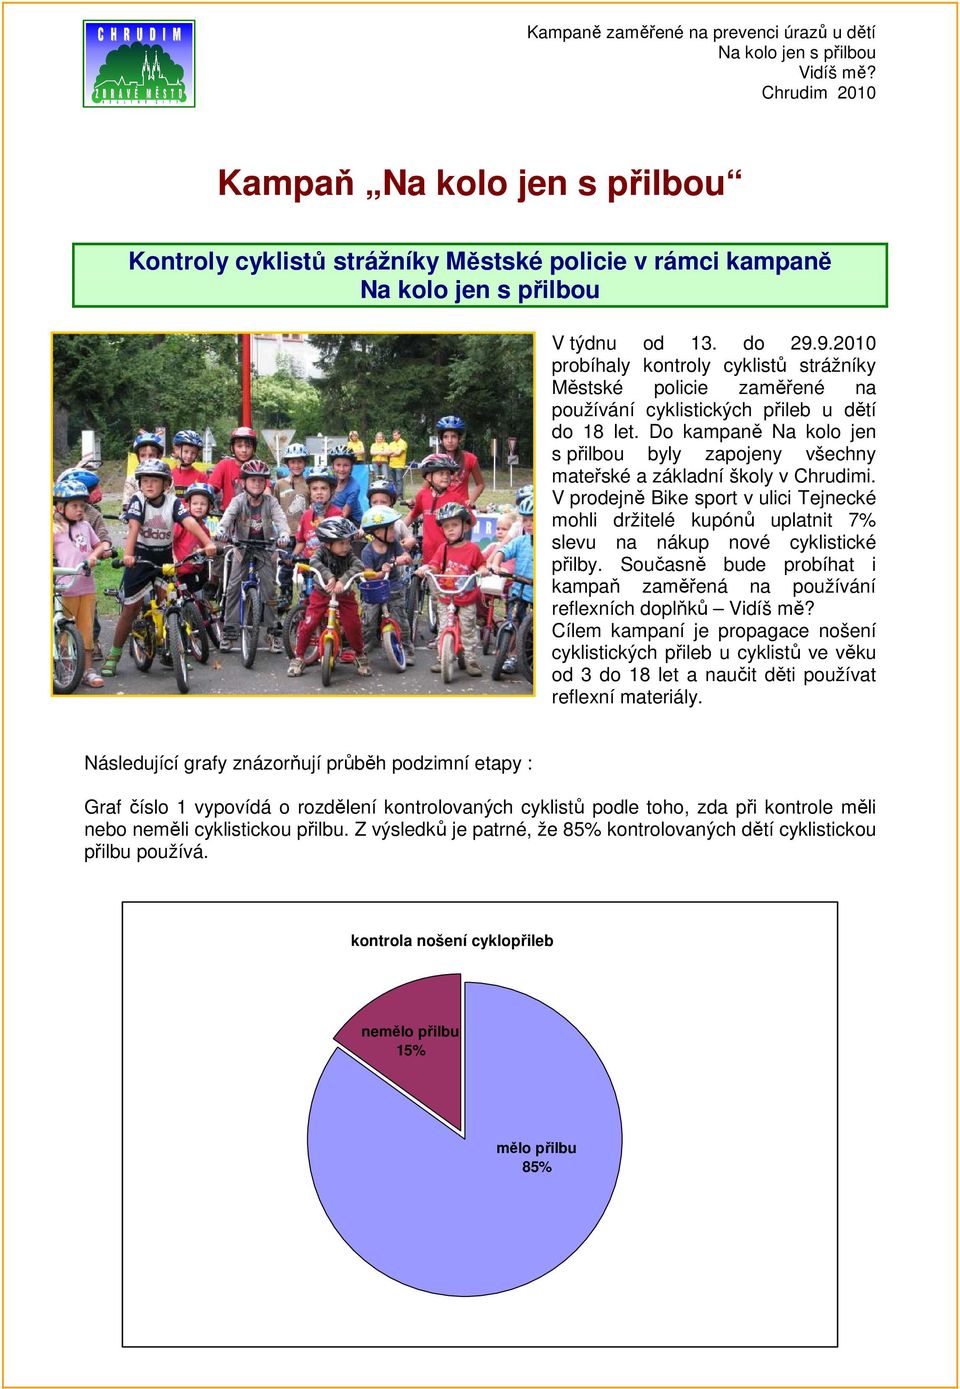 9.2010 probíhaly kontroly cyklistů strážníky Městské policie zaměřené na používání cyklistických přileb u dětí do 18 let.